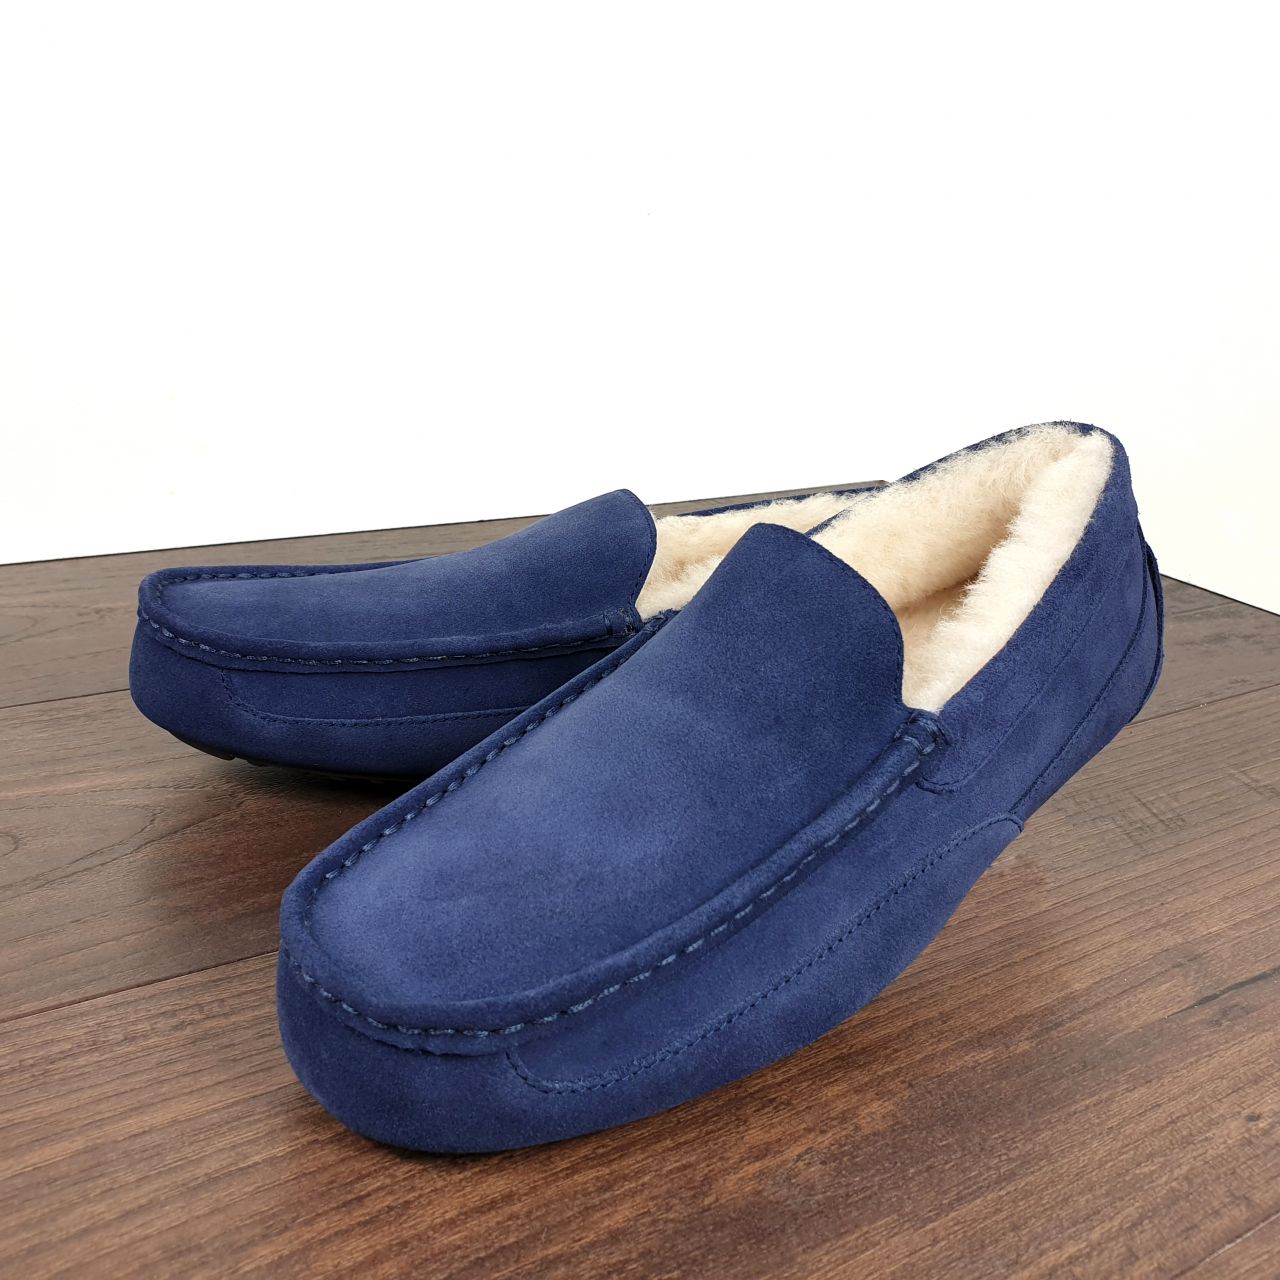 slippers inside home